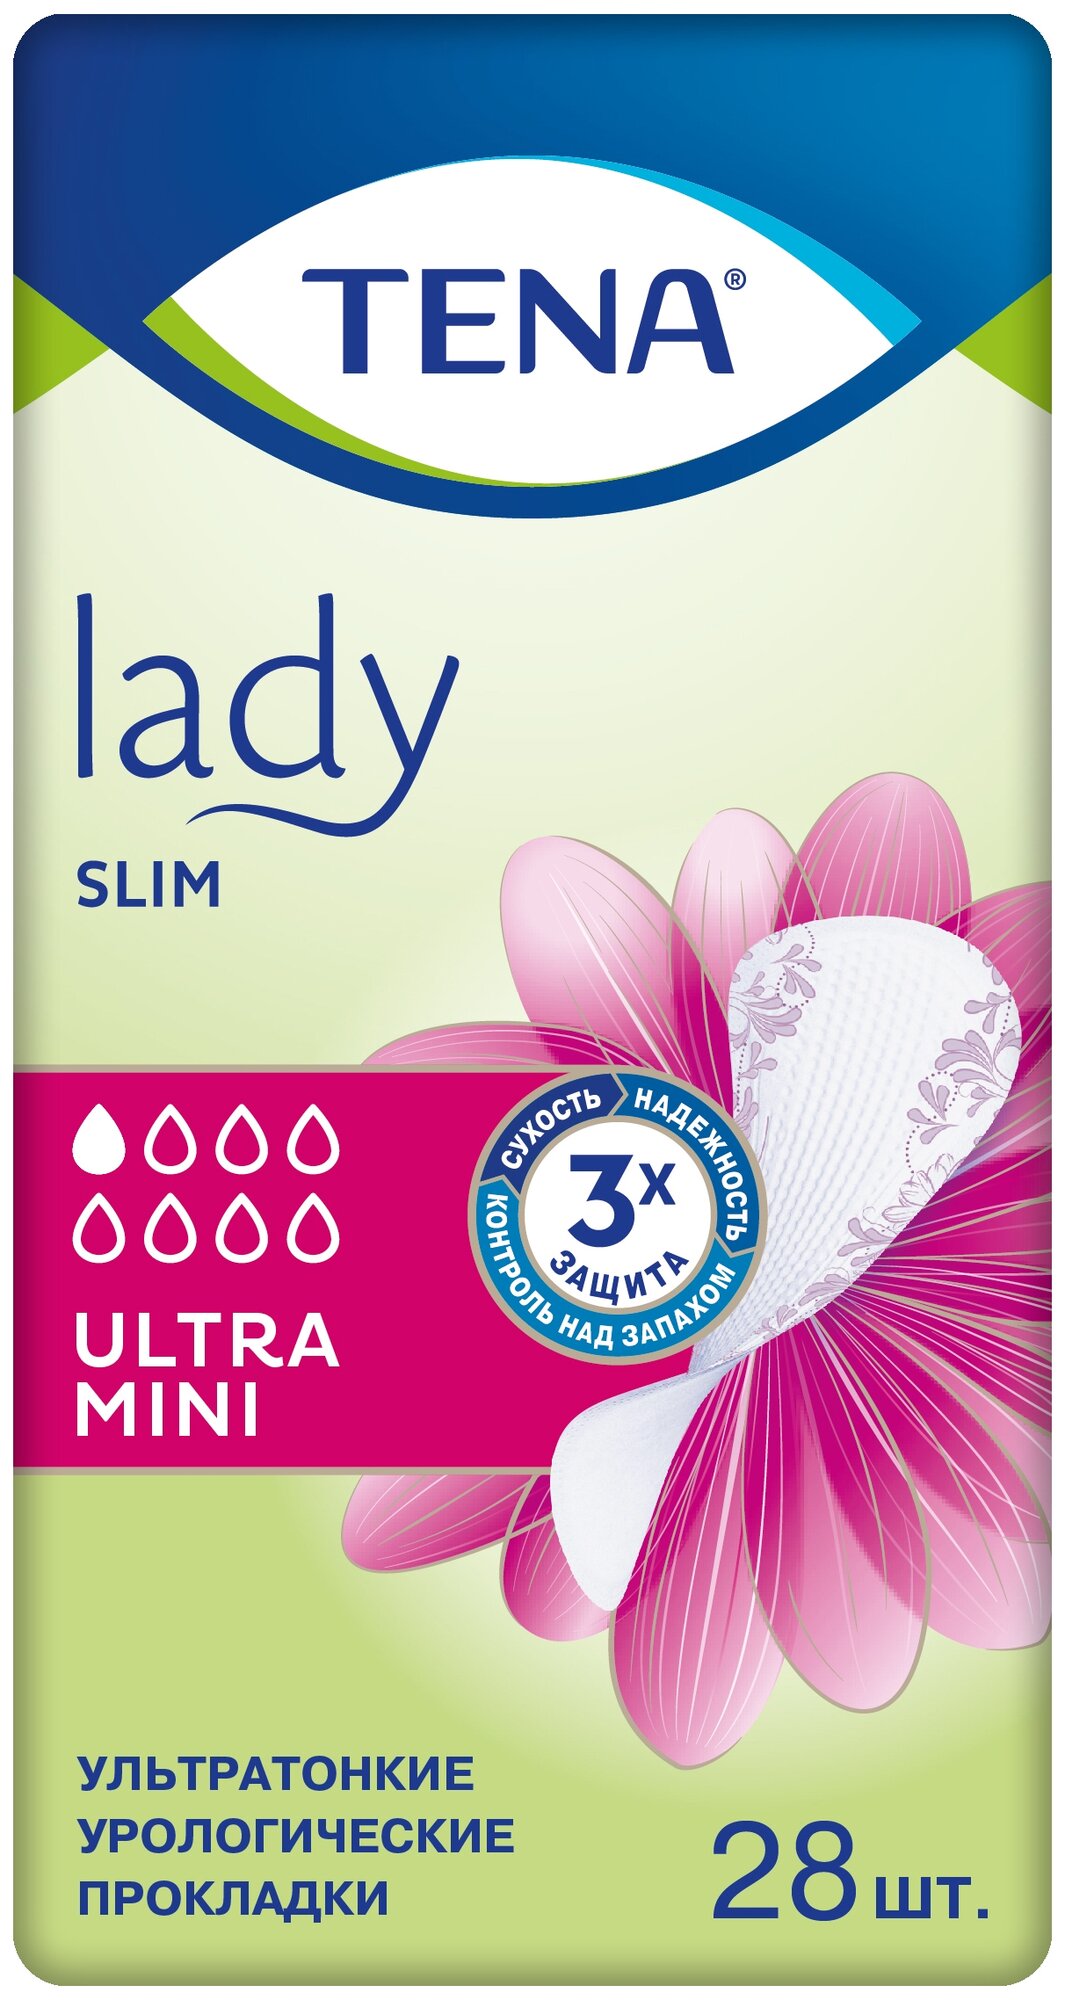 Прокладки Tena Lady Slim Ultra Mini, 28 шт.